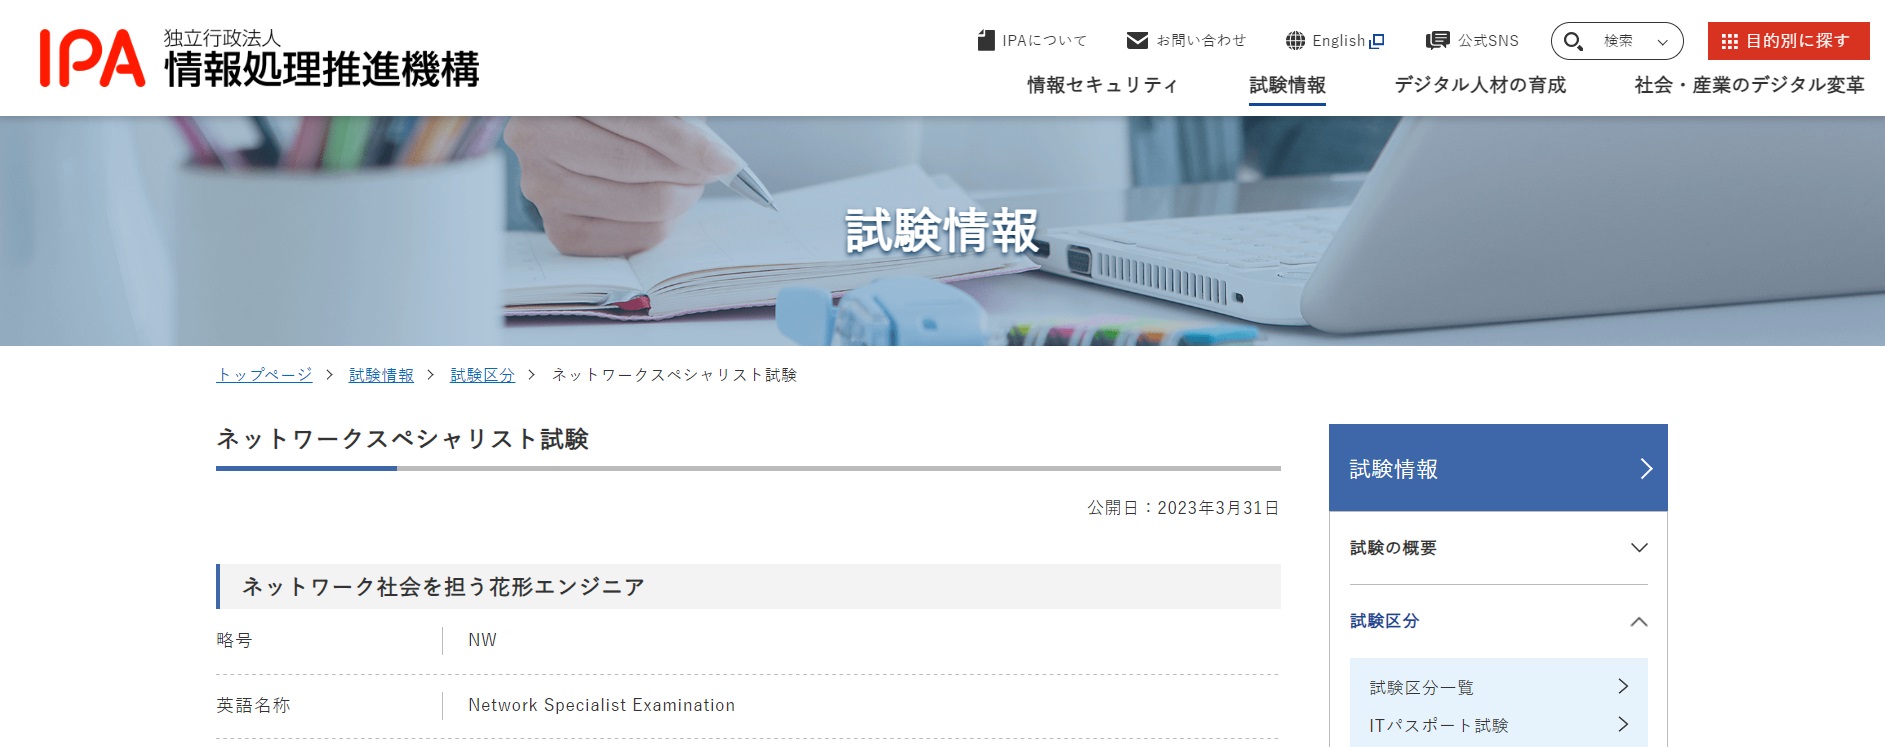 ネットワークスペシャリスト試験 試験情報｜IPA 独立行政法人 情報処理推進機構